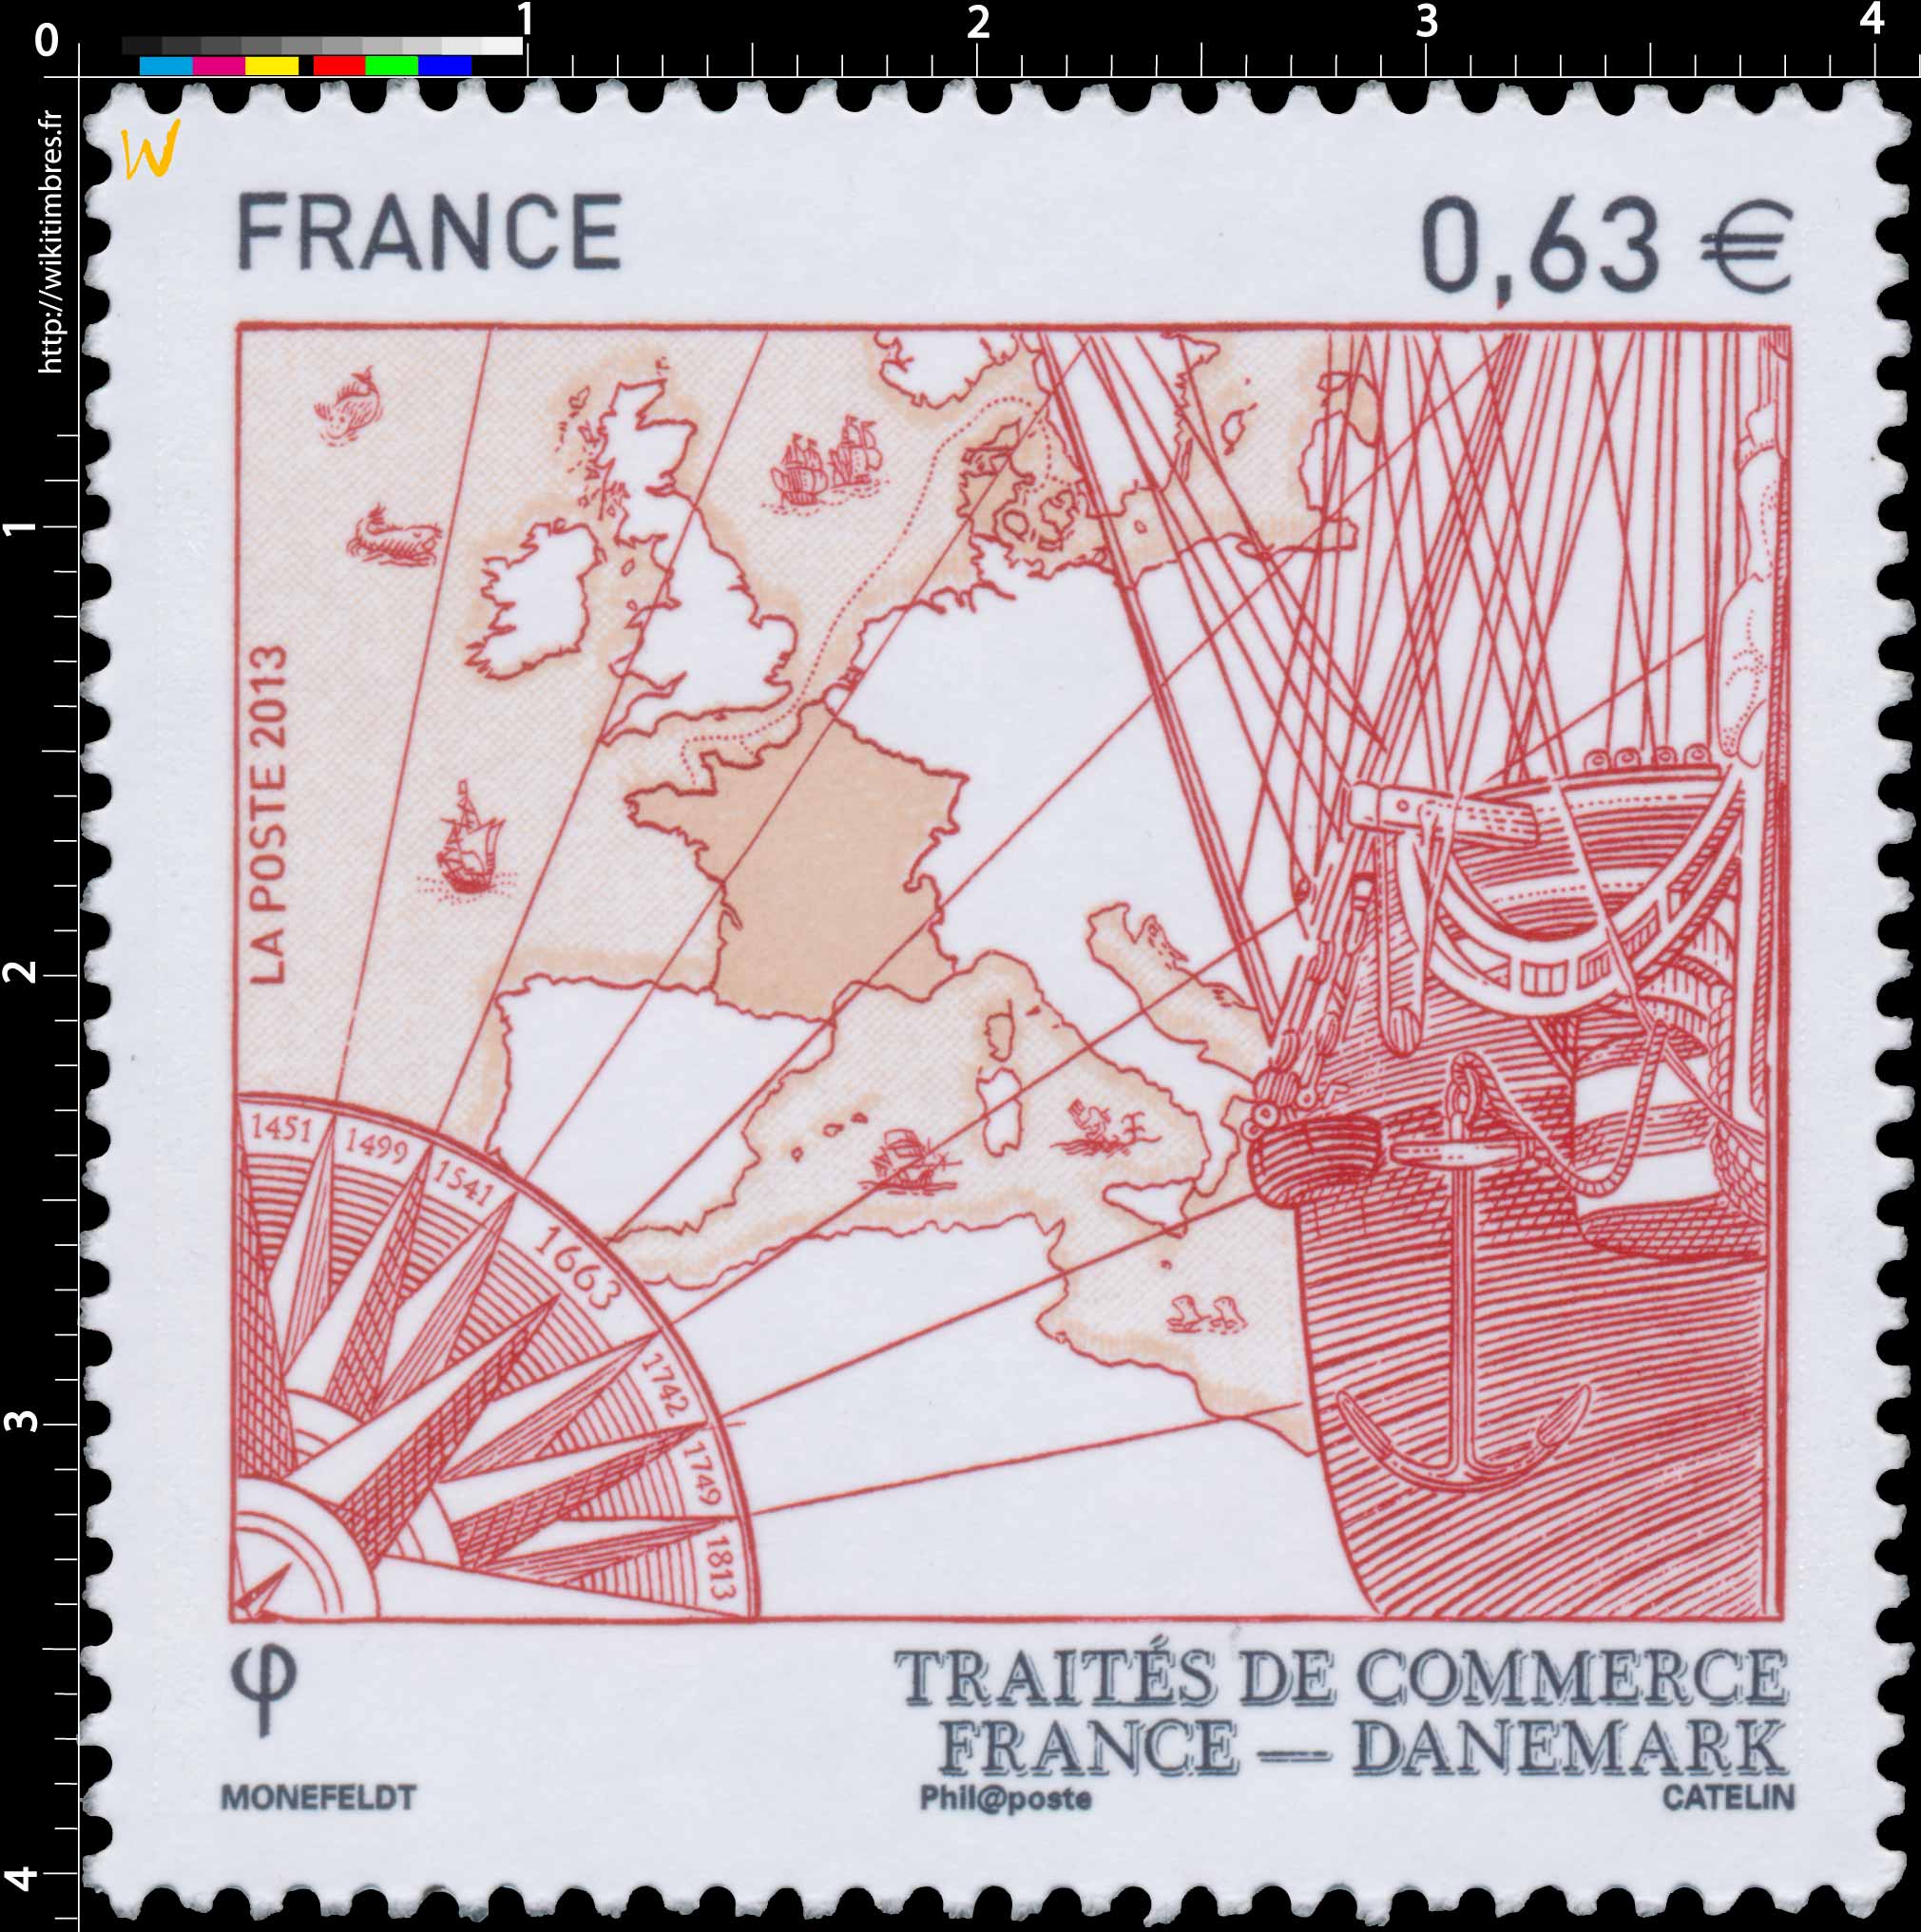 Traité de commerce France - Danemark  